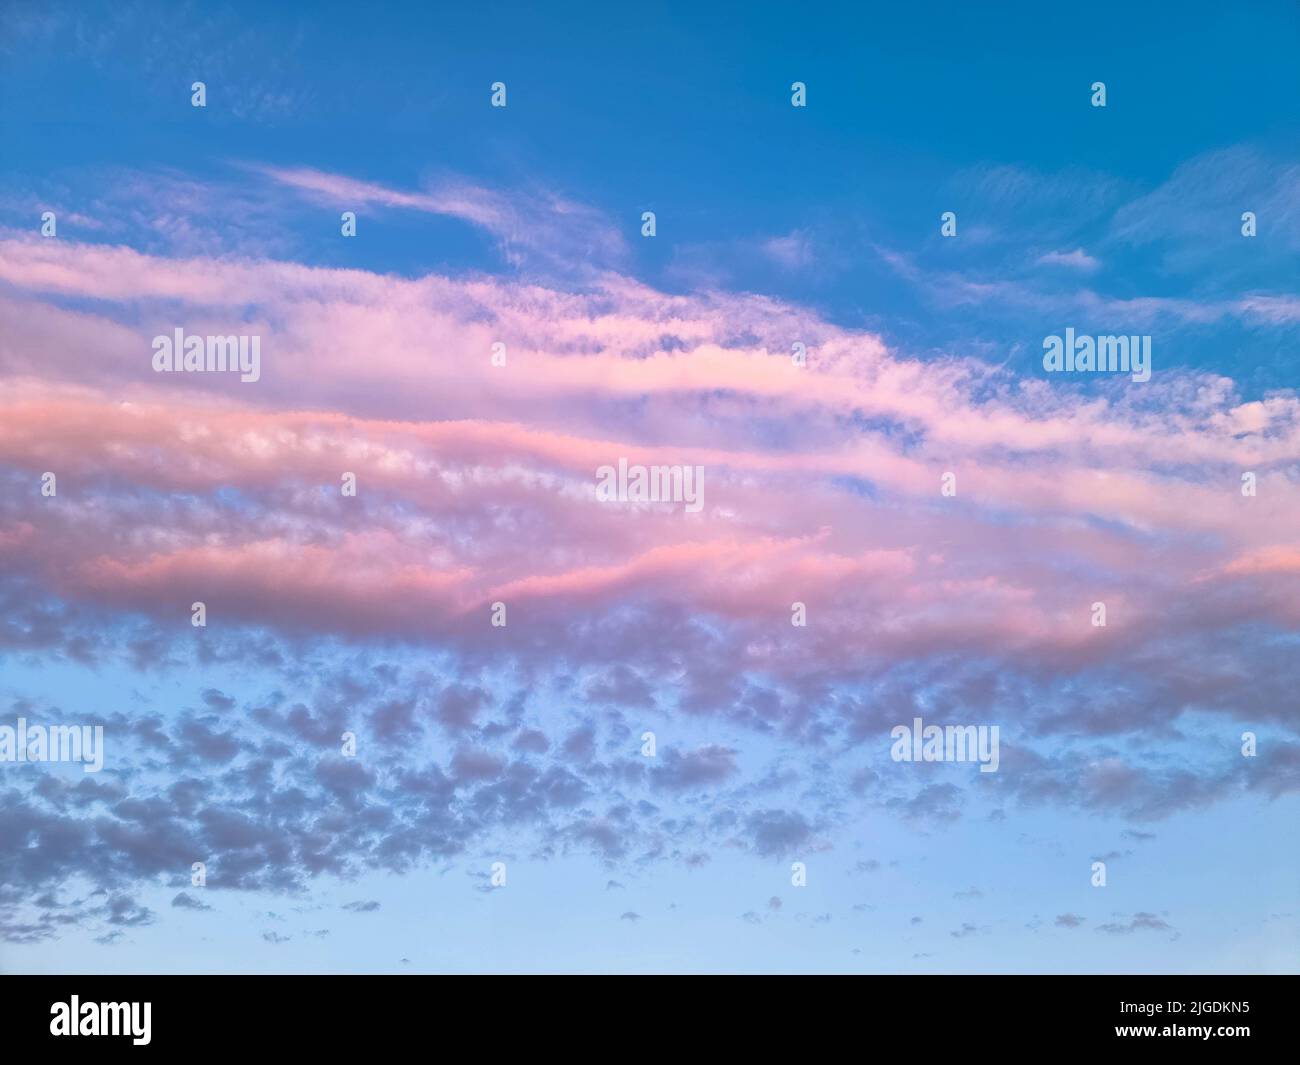 Espectacular cielo azul y púrpura con nubes de cúmulos. Fotografía nocturna. Fotograma completo, concepto Heaven. Libertad de aire en la atmósfera. Foto de stock